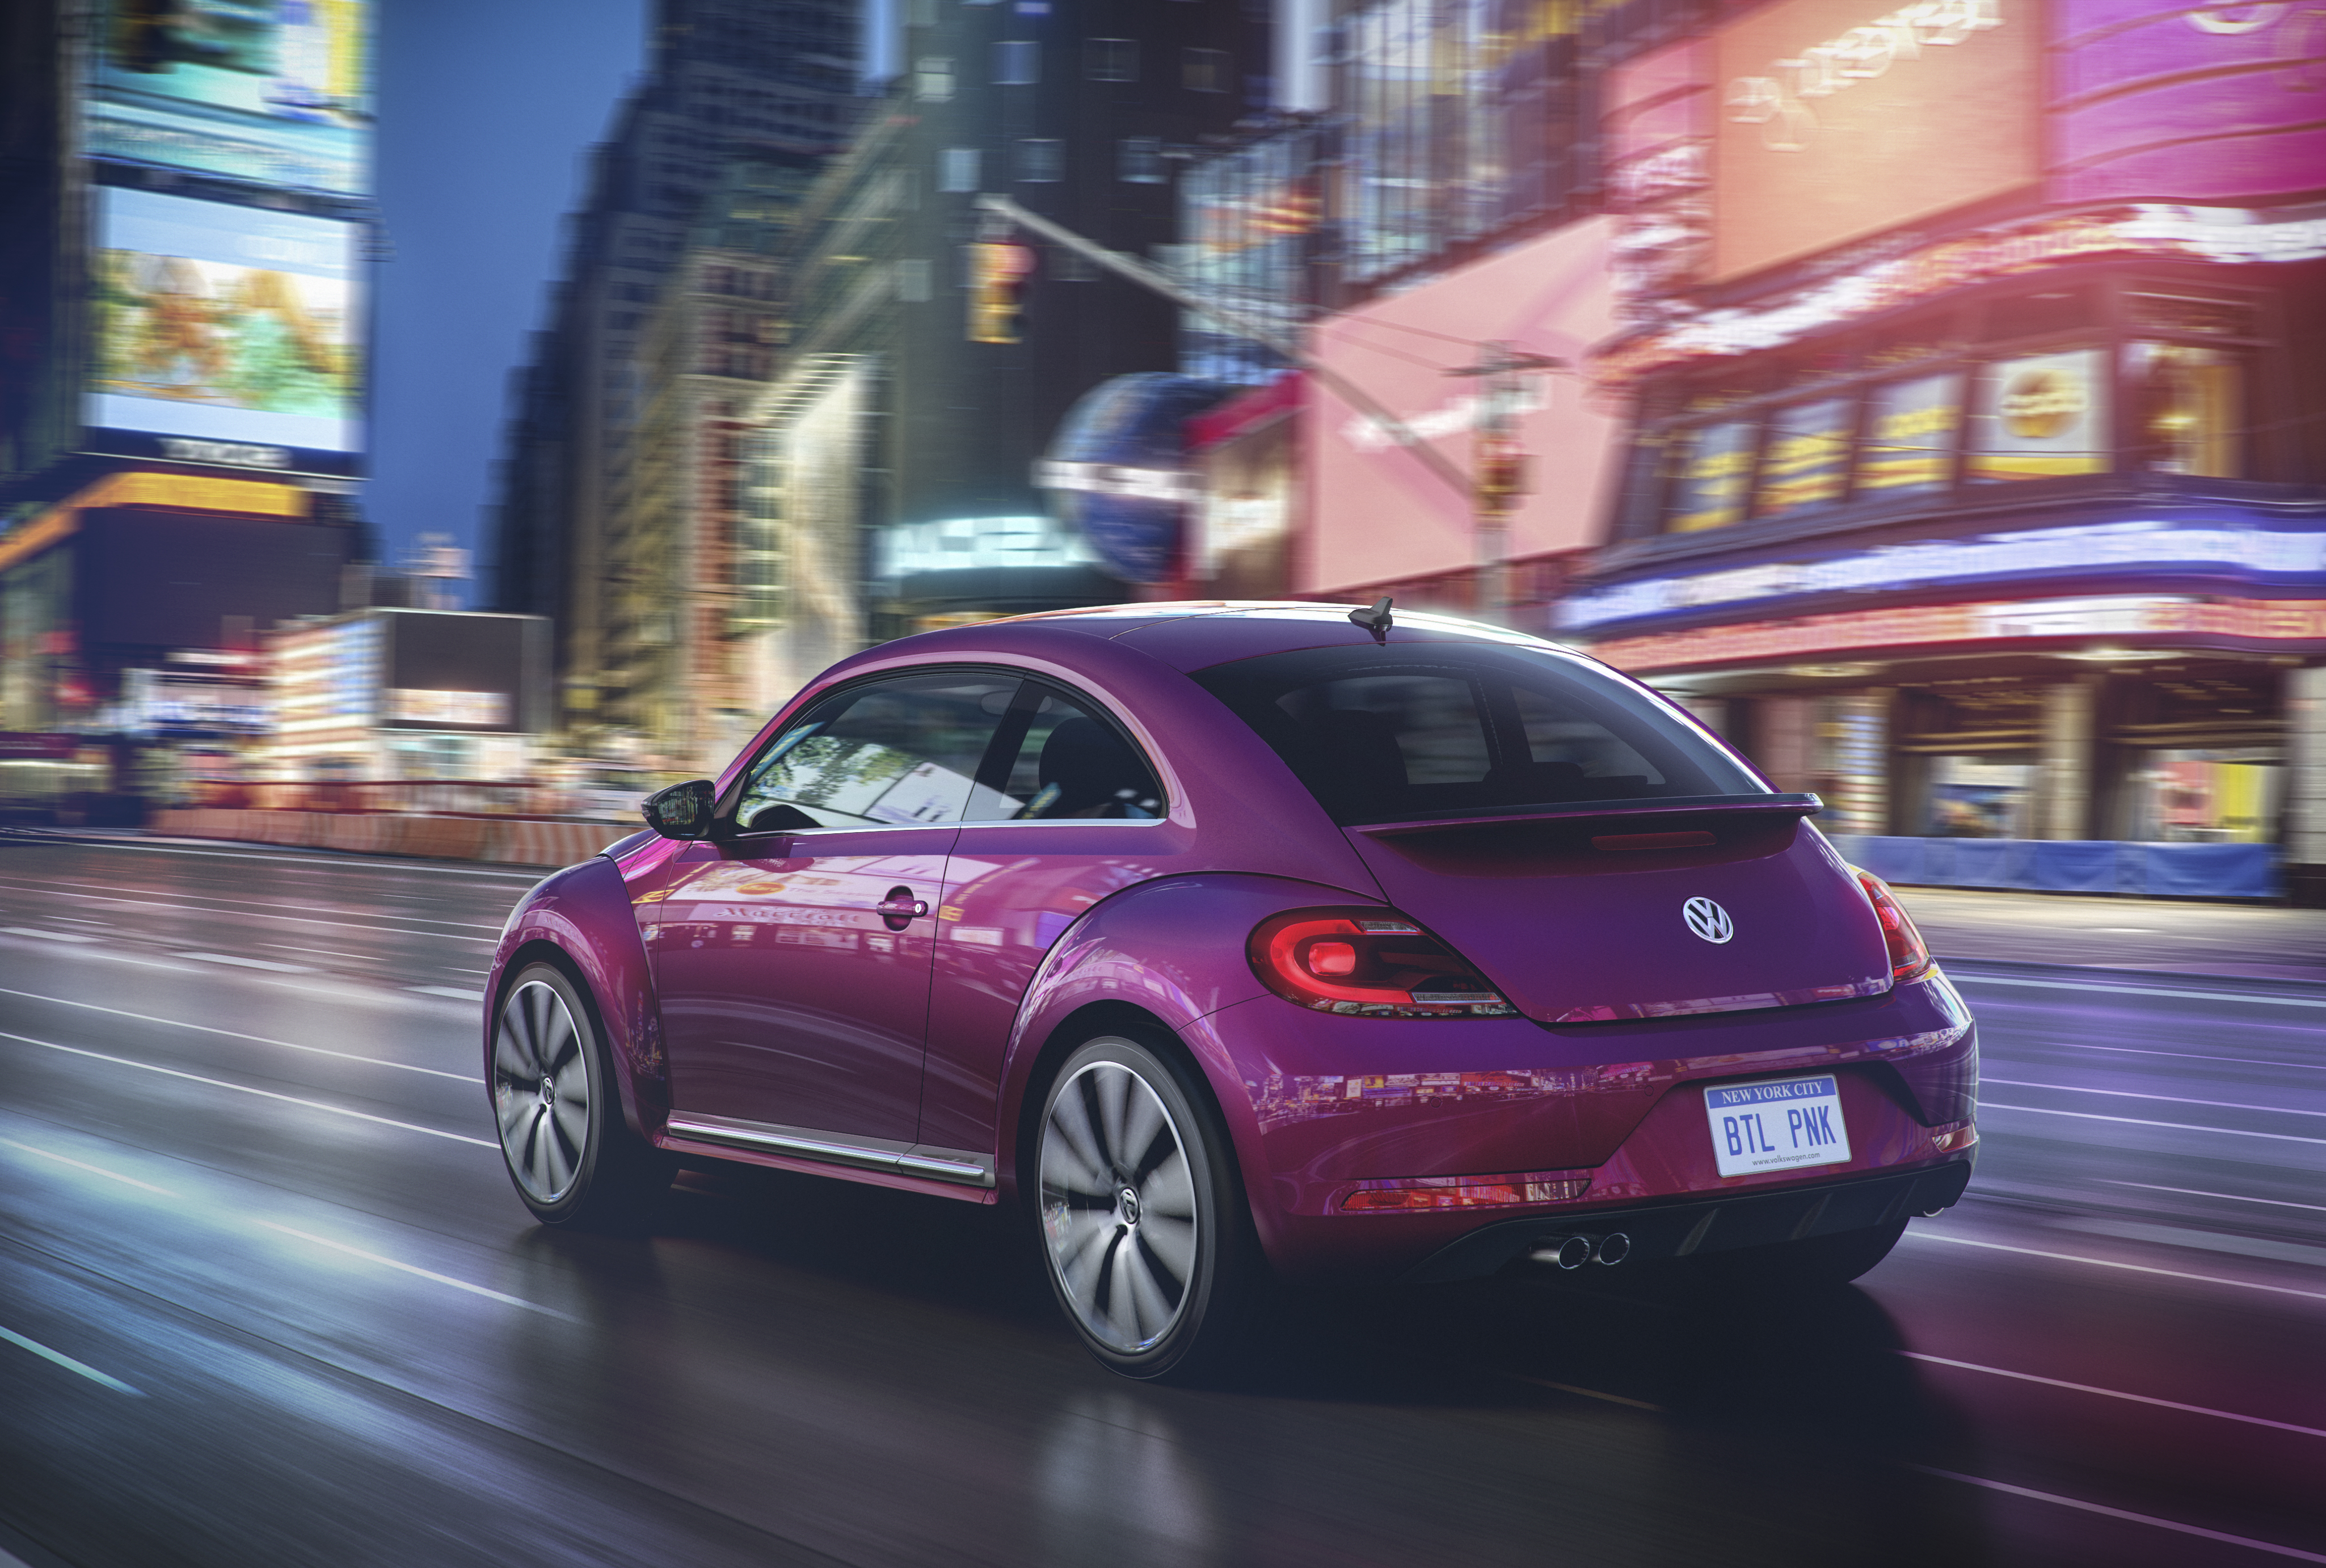 Volkswagen Beetle exterior restyling